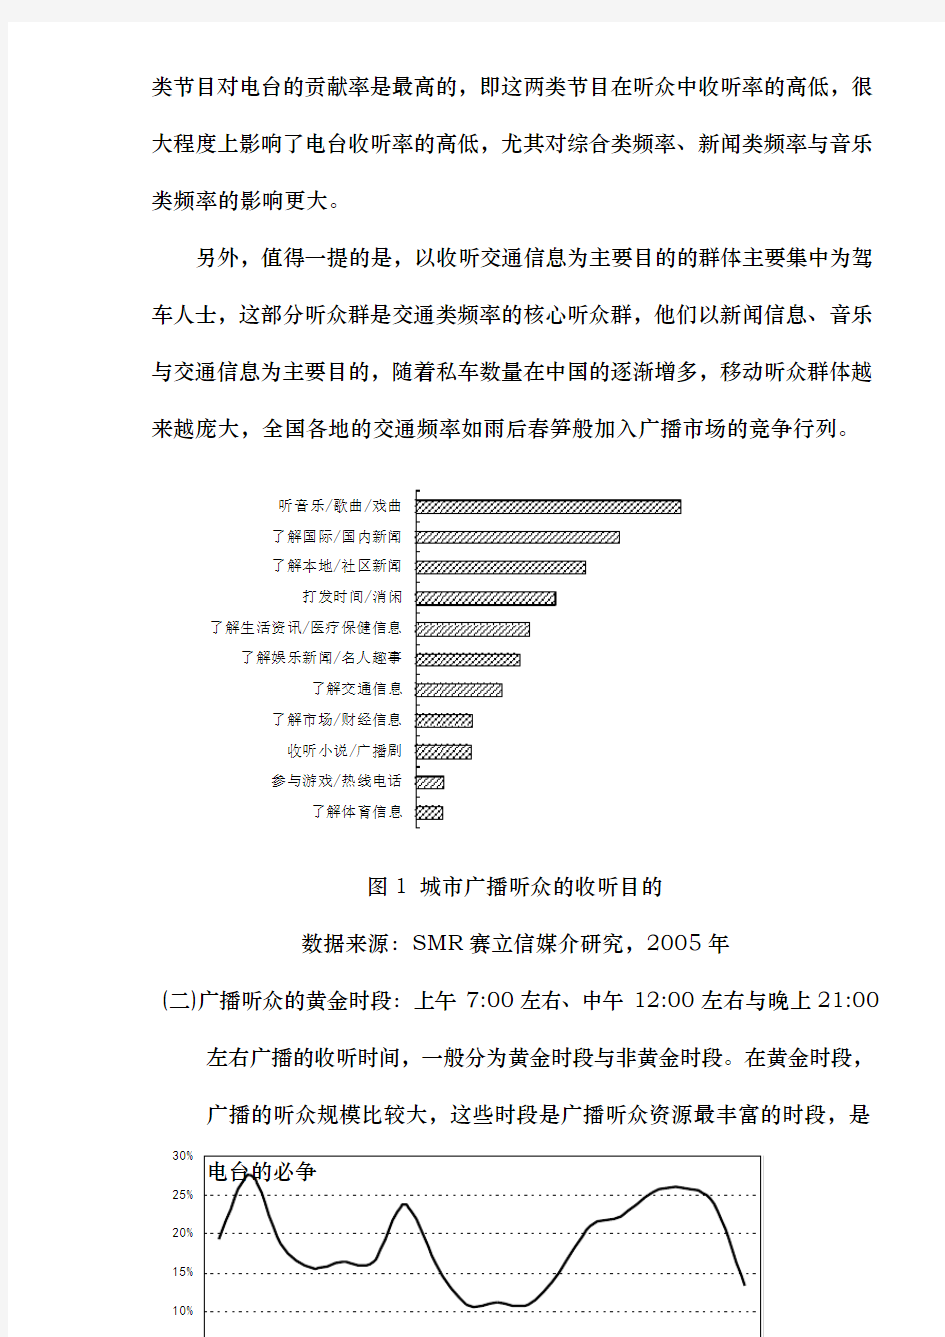 中国城市广播听众收听习惯分析报告